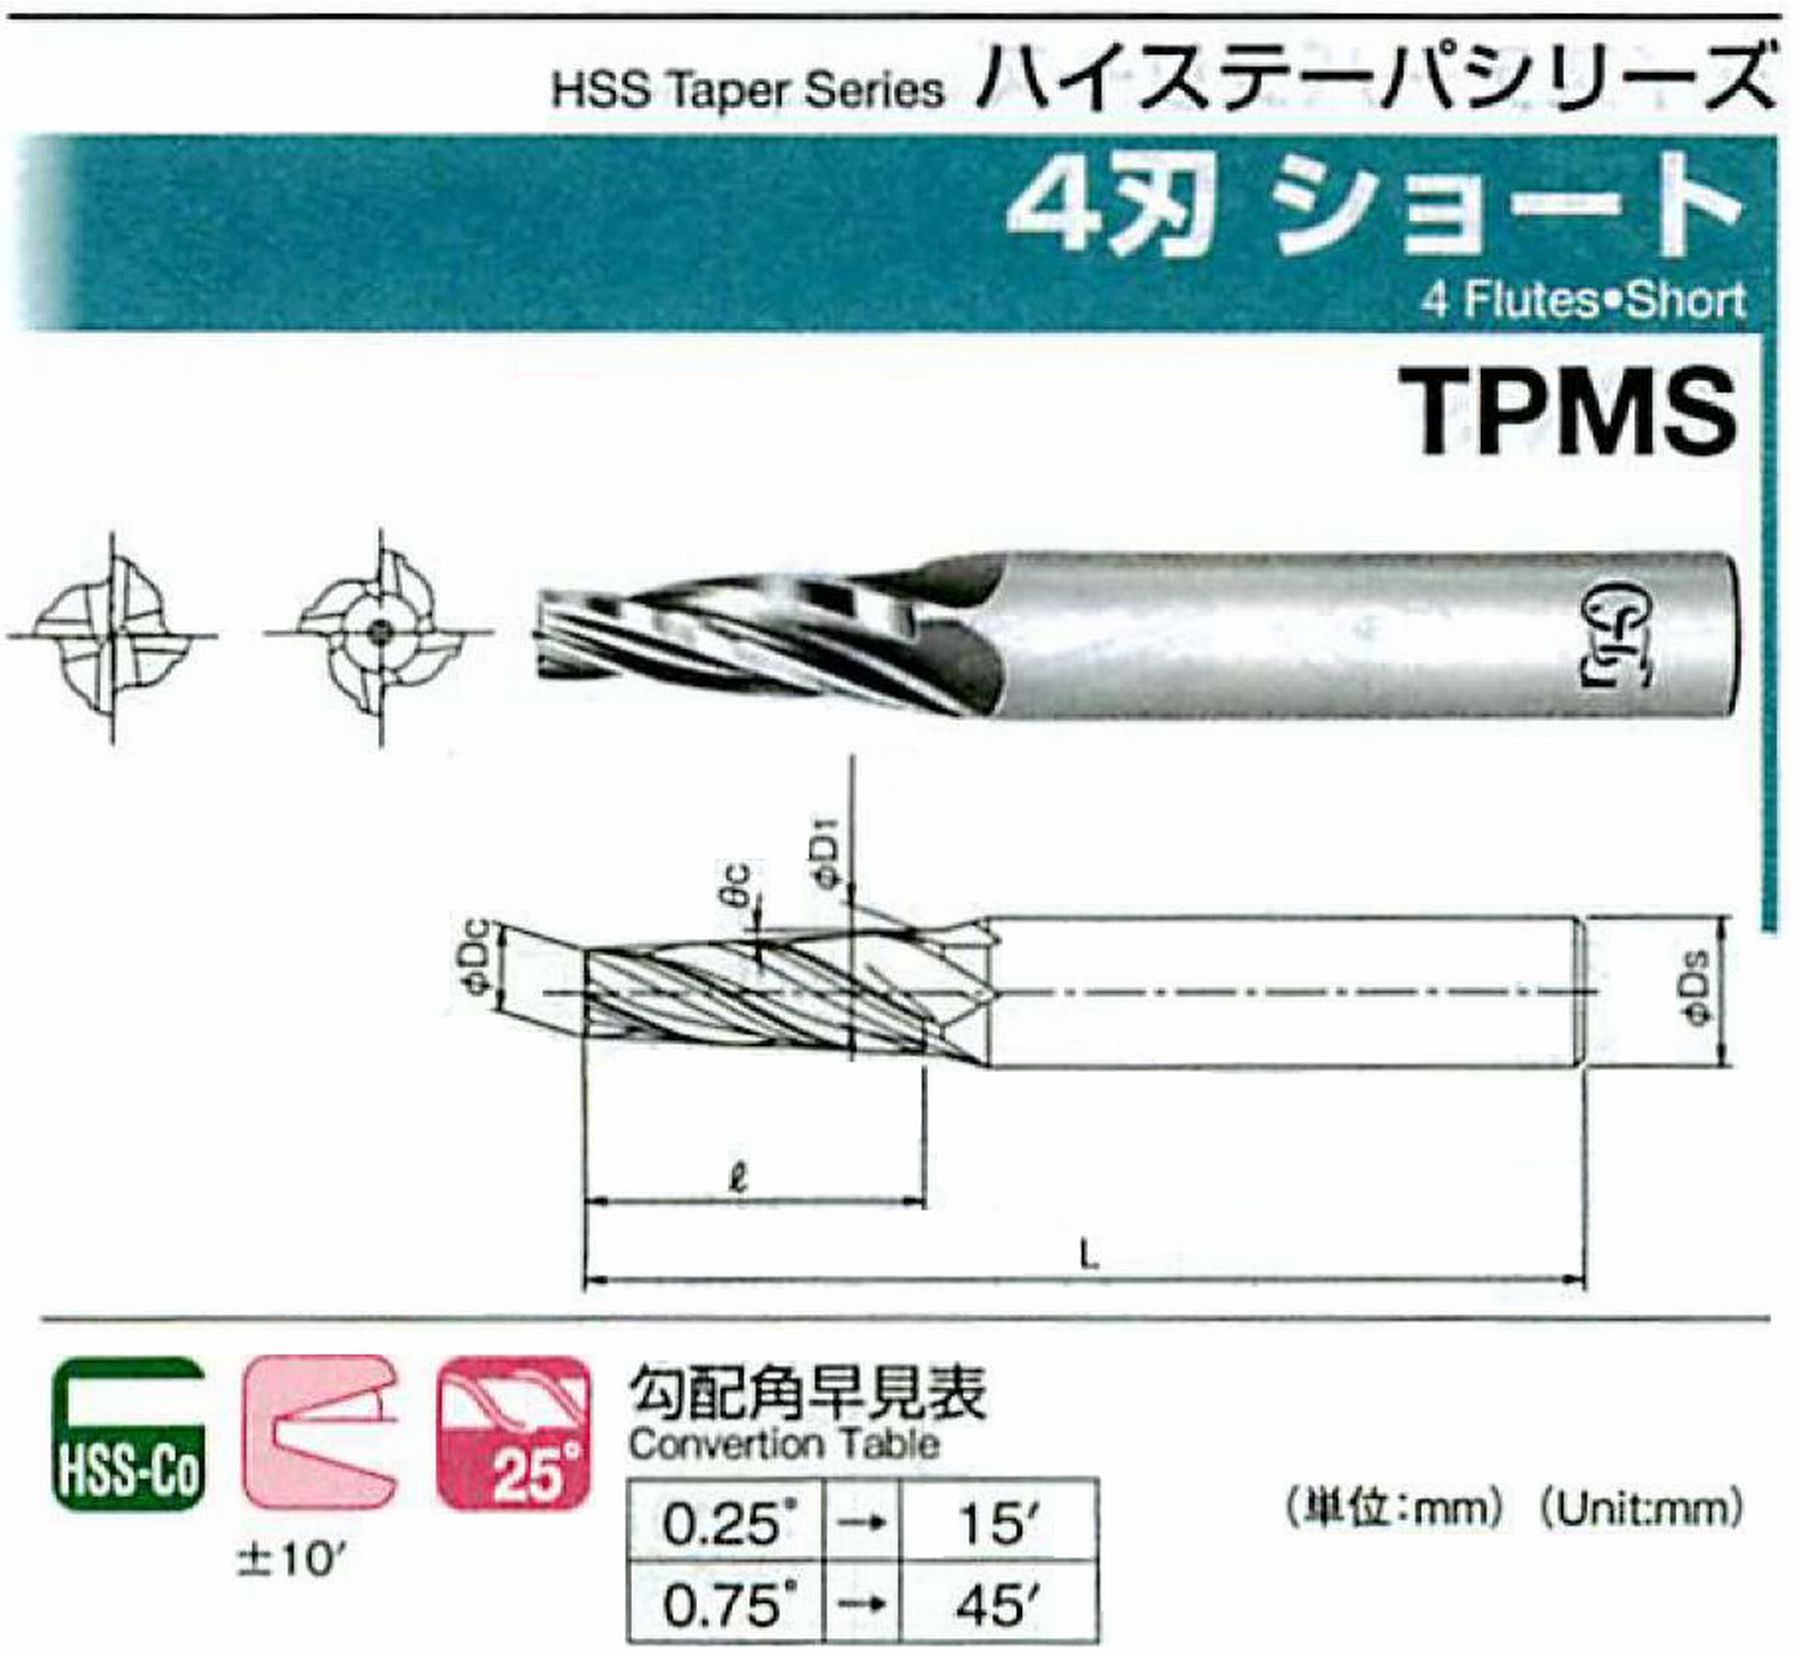 オーエスジー/OSG 4刃 ショート TPMS 外径×刃部テーパ半角2.5×1.5°全長57 刃長13 シャンク径6mm 大端径3.18